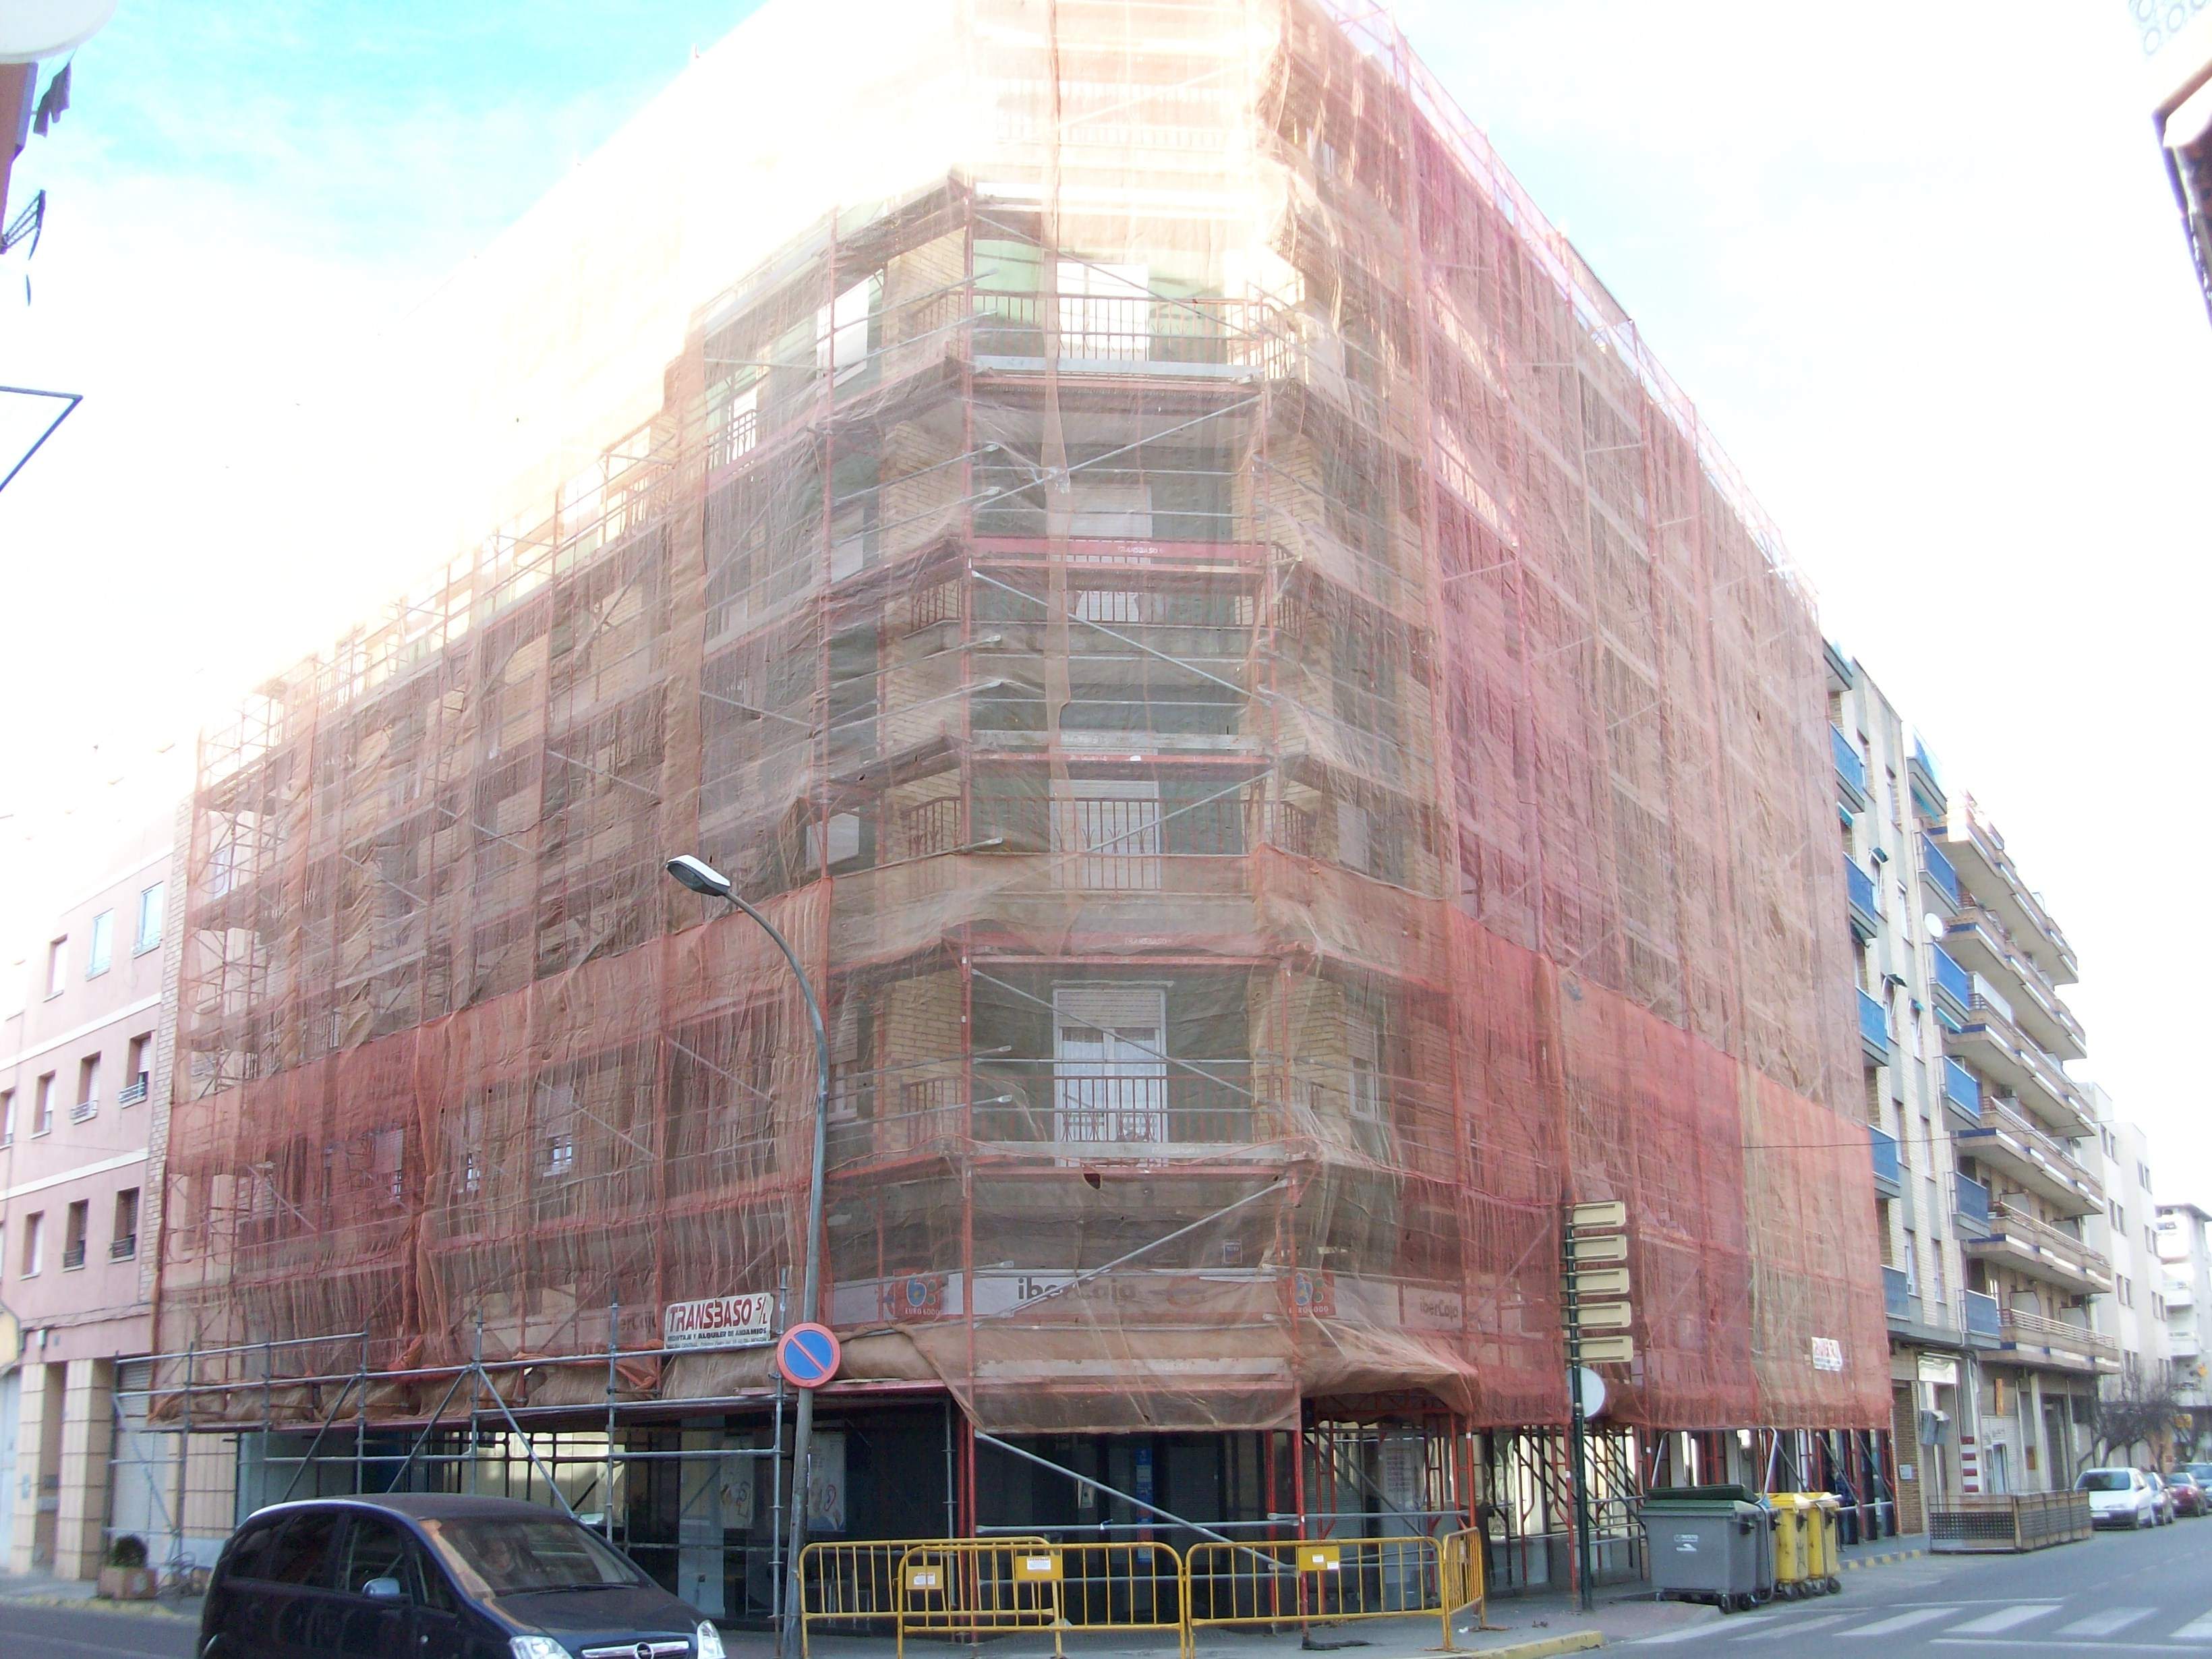 Alquiler de maquinaria para la construcción e industria en Huesca